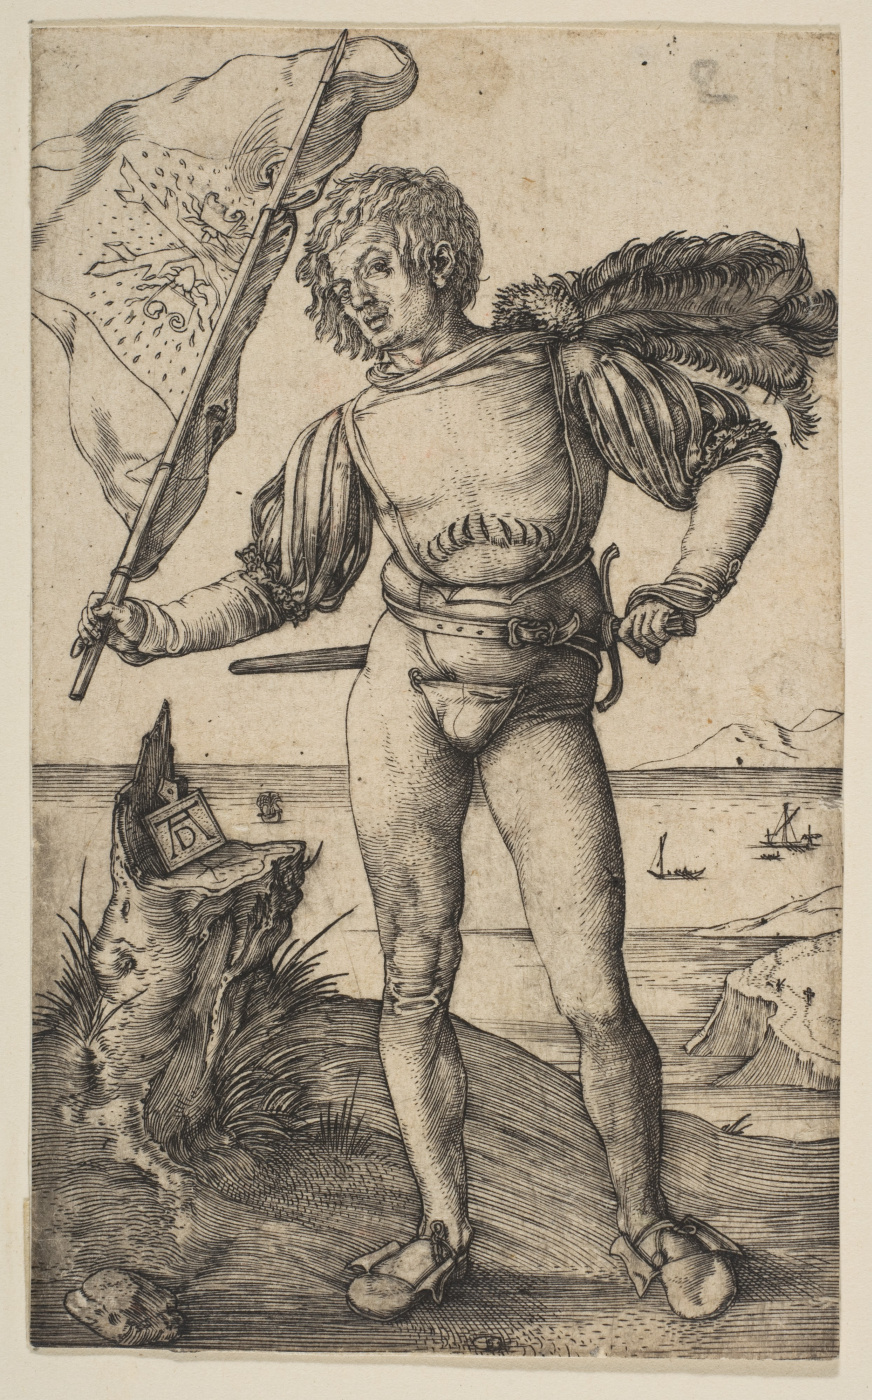 Альбрехт Дюрер (1471- 1528), гравюра «Меланхолия».